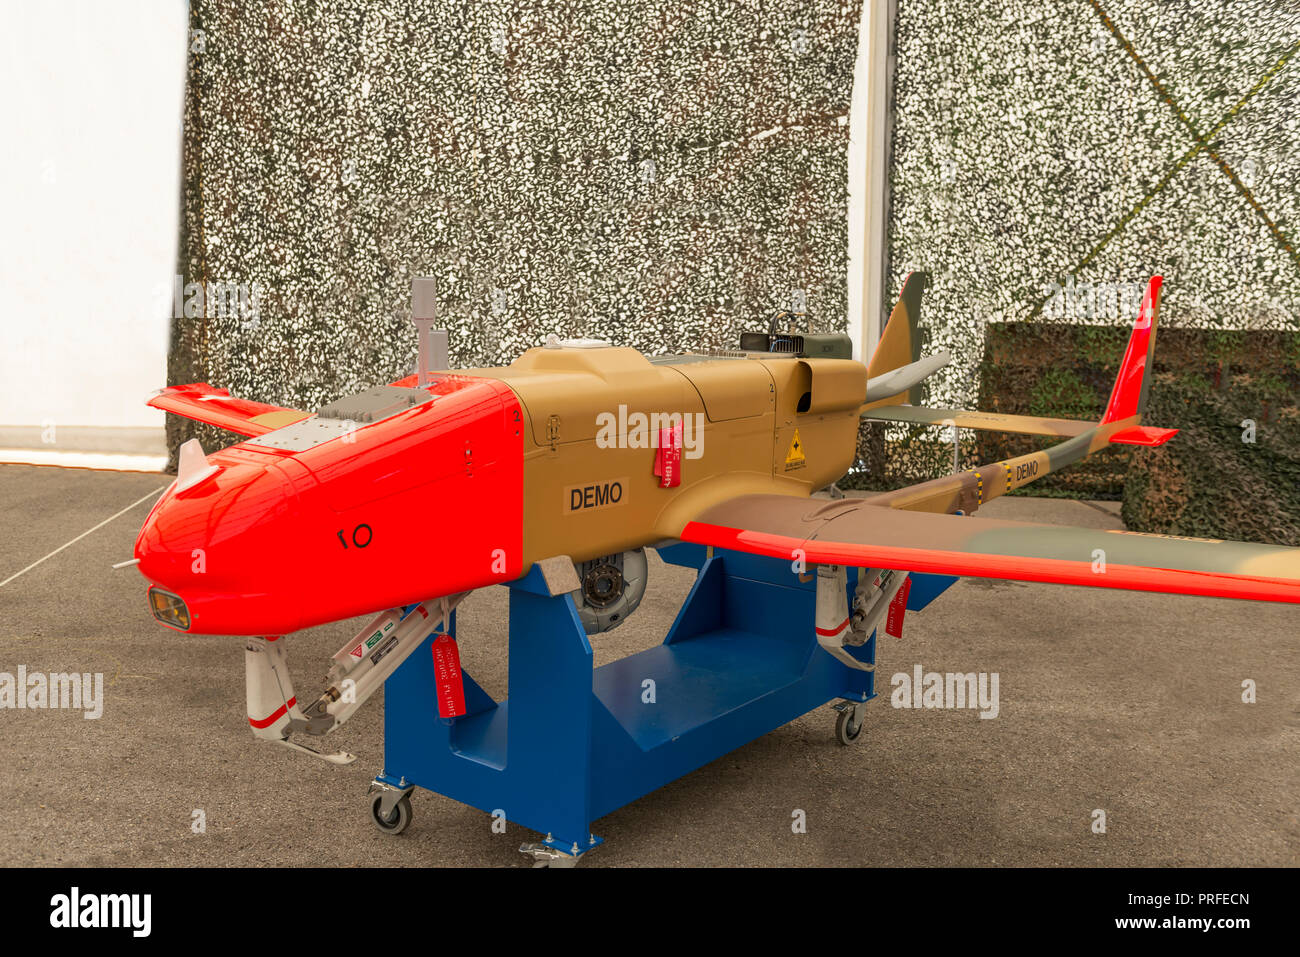 Swiss Military Drone Stockfotografie - Alamy